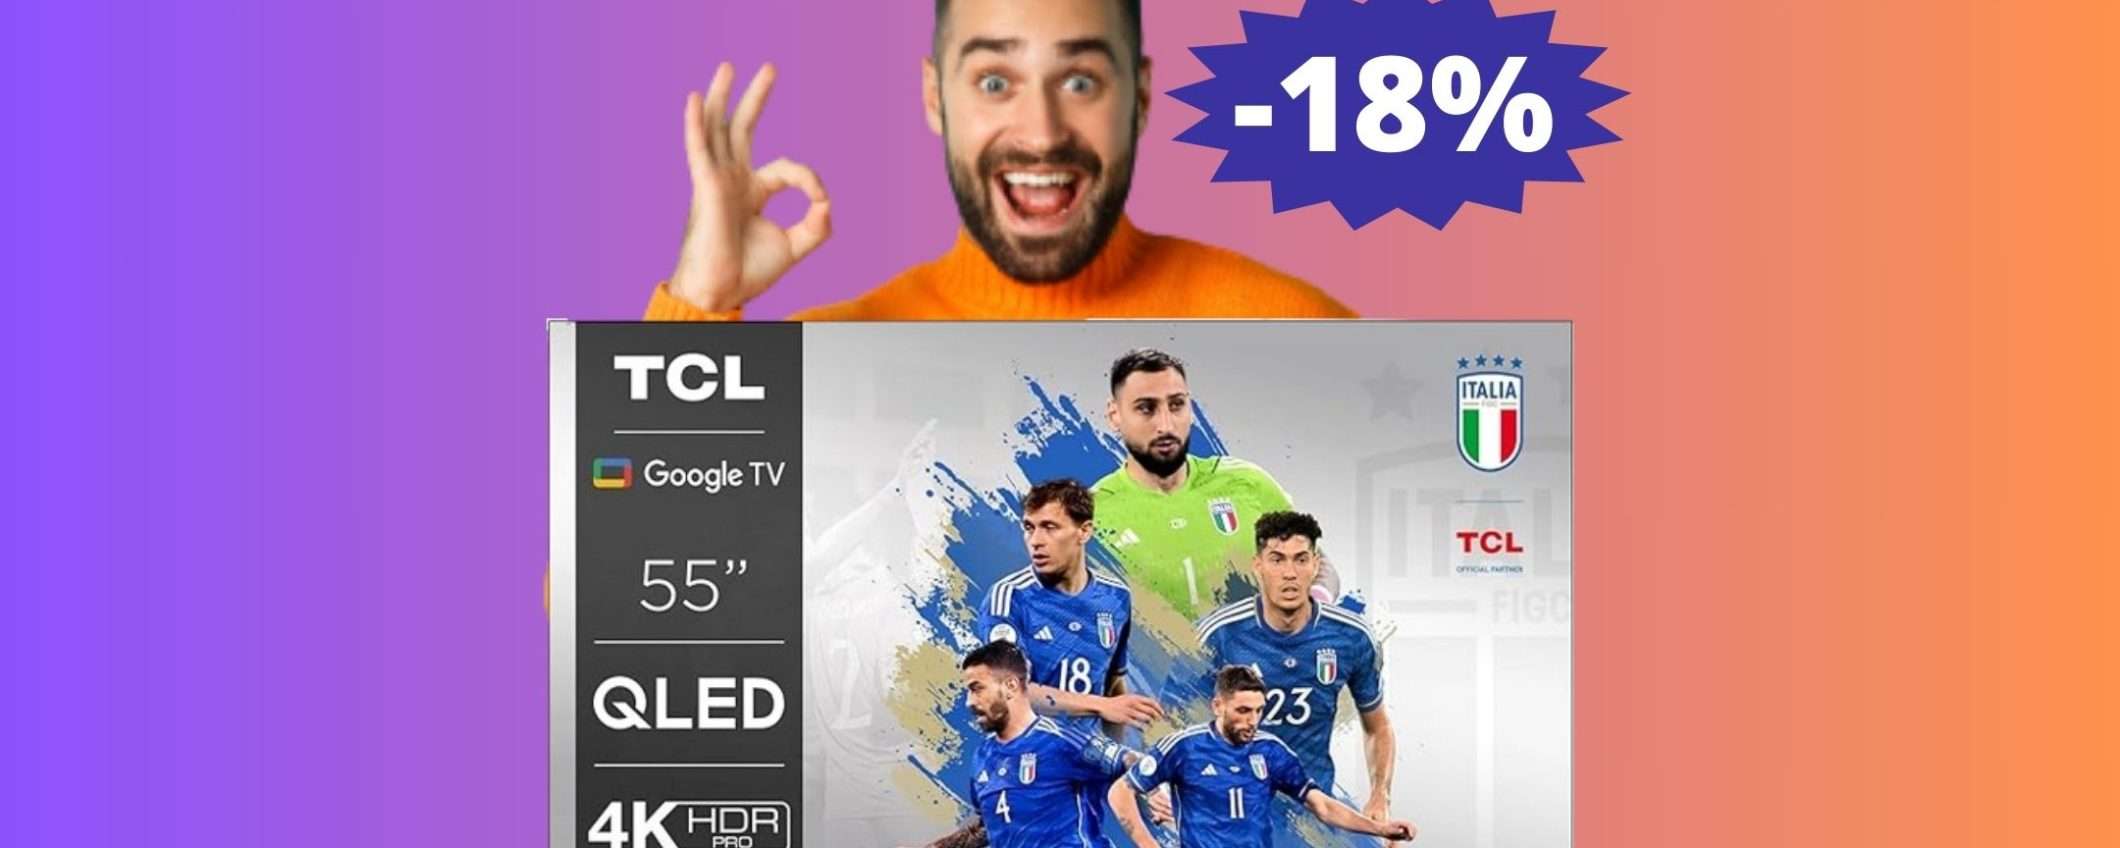 Smart TV TCL QLED: SUPER sconto del 18% su Amazon